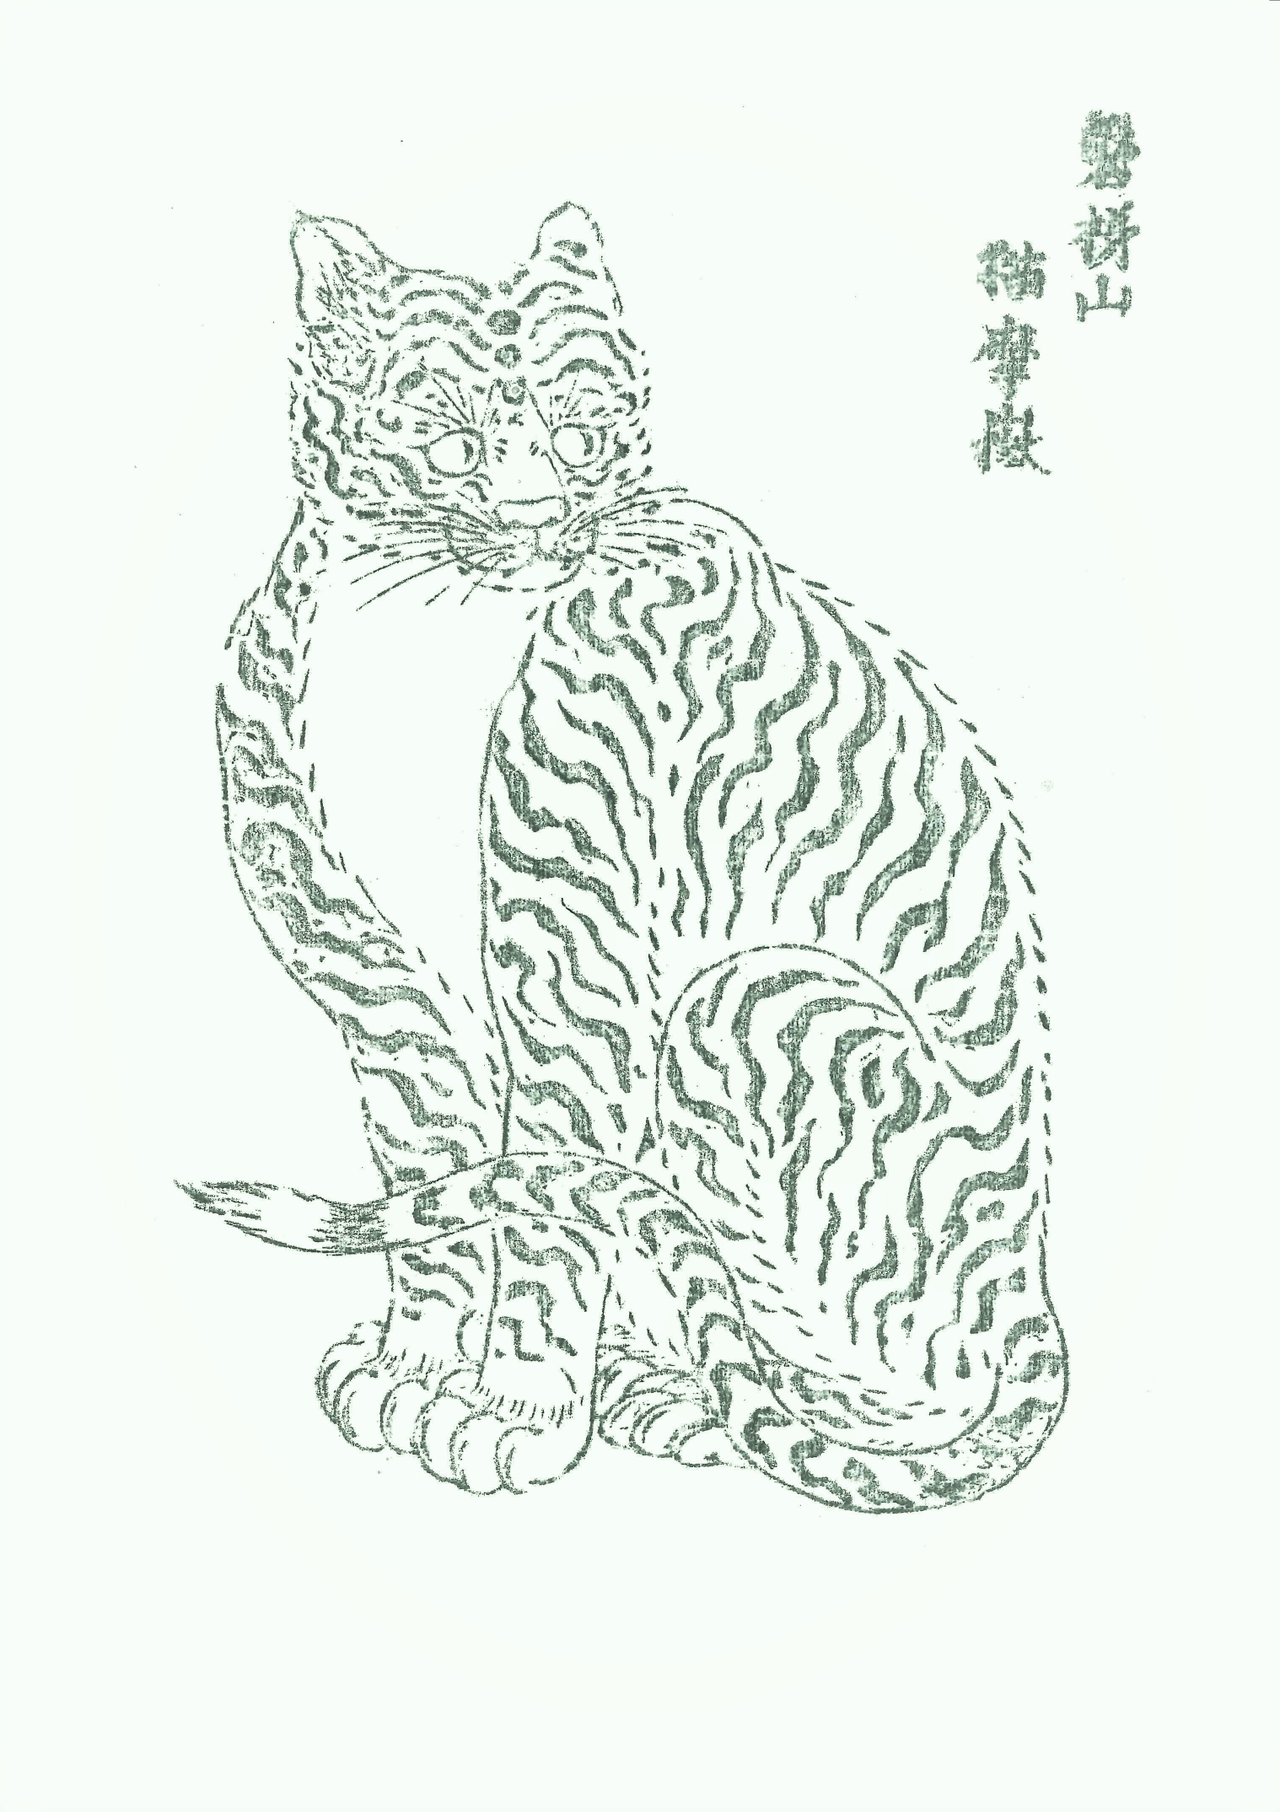 Бумажный амулет с изображением кошки, такие амулеты раздавали в святилище Бандай в префектуре Фукусима во времена, когда процветало шелководство. В настоящее время гравюрные доски и отпечатанные амулеты хранятся в музее Бандайсан Энитидзи